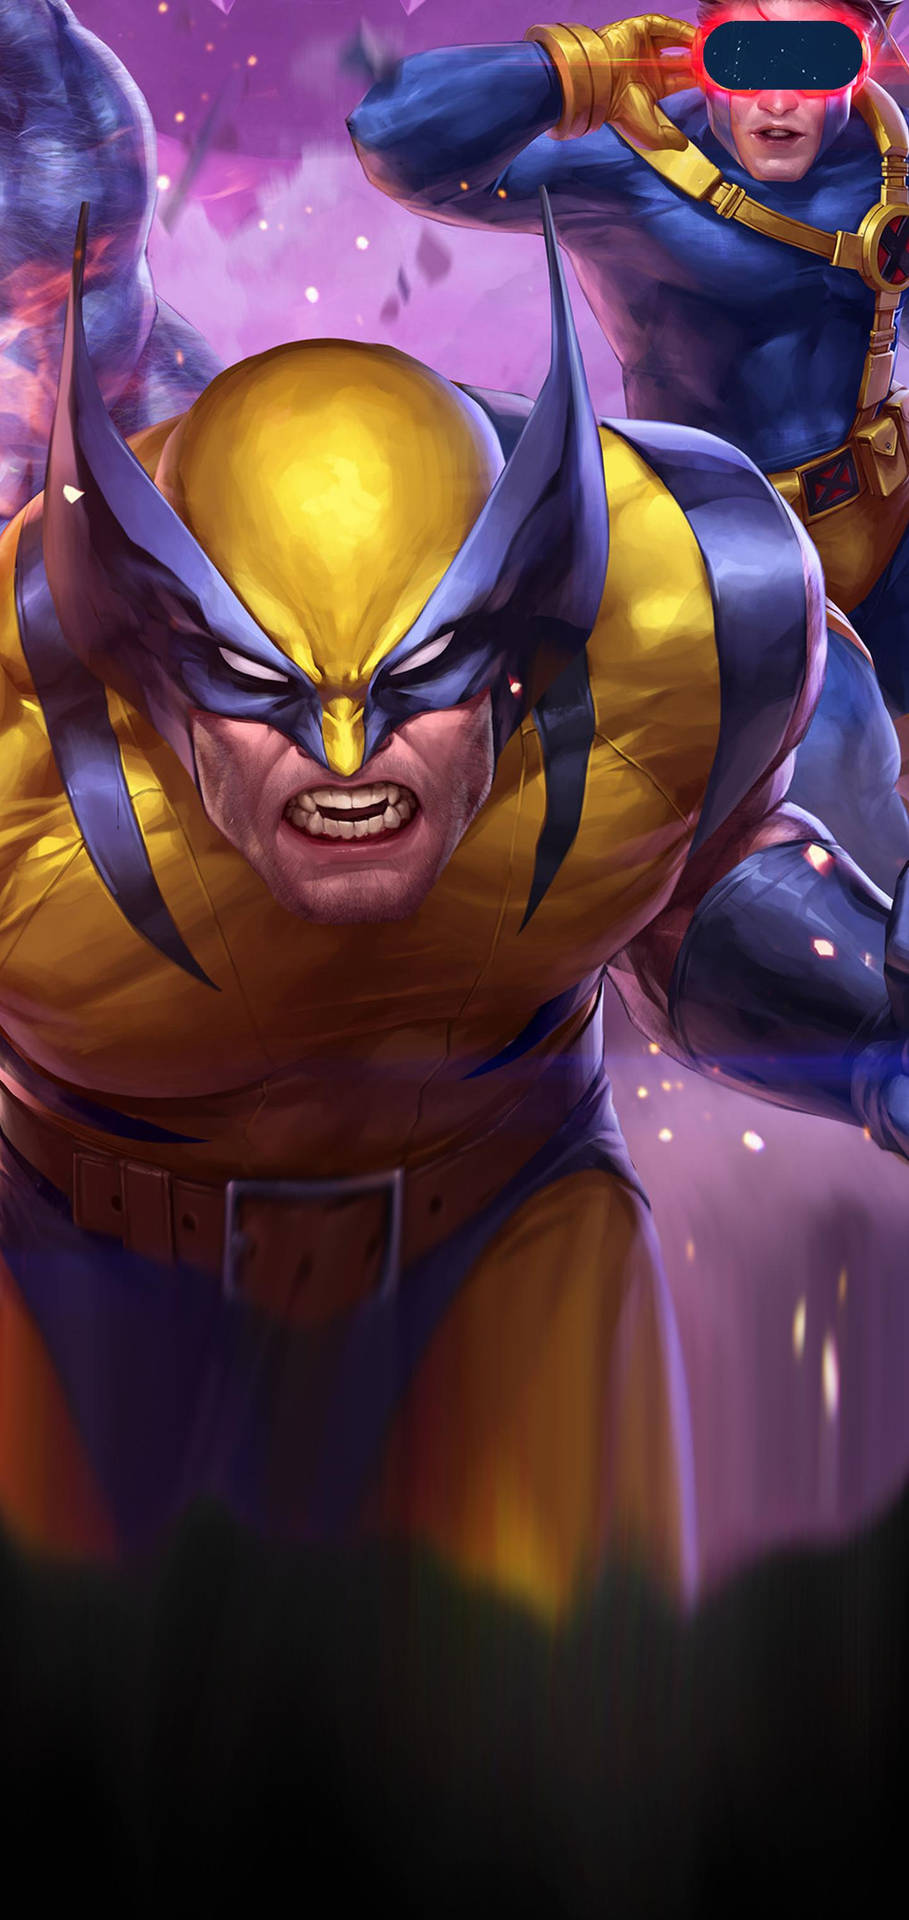 HD wallpaper: X-Men, Cyclops (Marvel Comics) | Wallpaper Flare